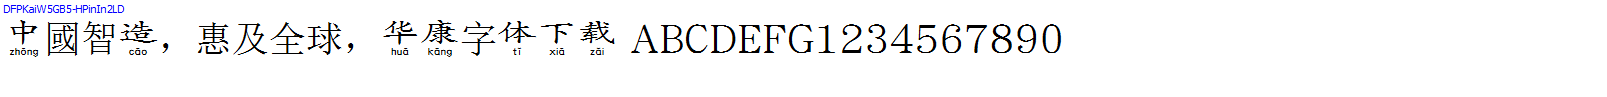 華康字體DFPKaiW5GB5-HPinIn2LD.TTF